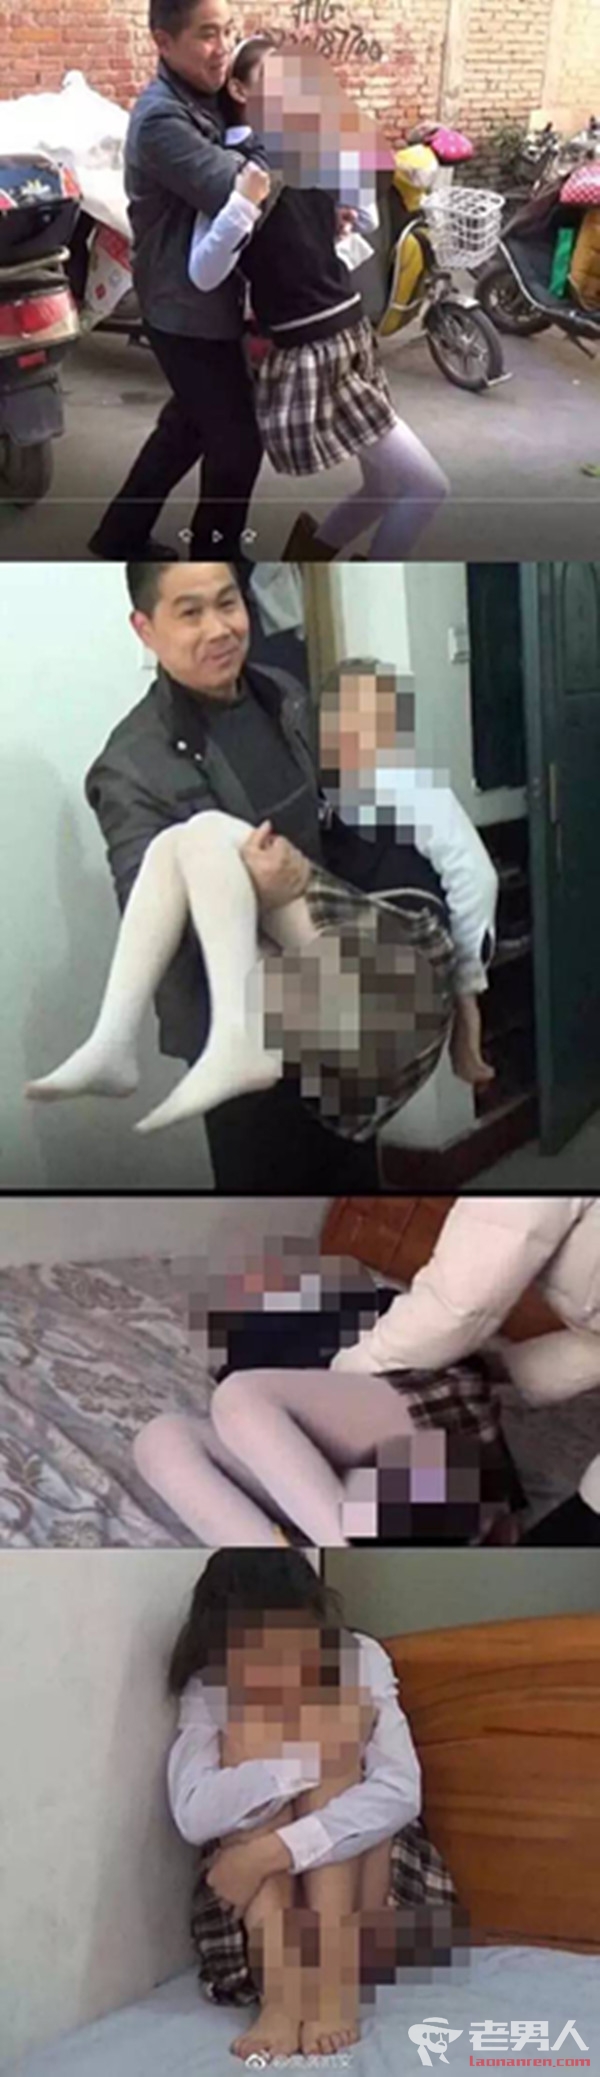 江苏刘老师媲美欣的儿童性侵系列视频图片遭曝光